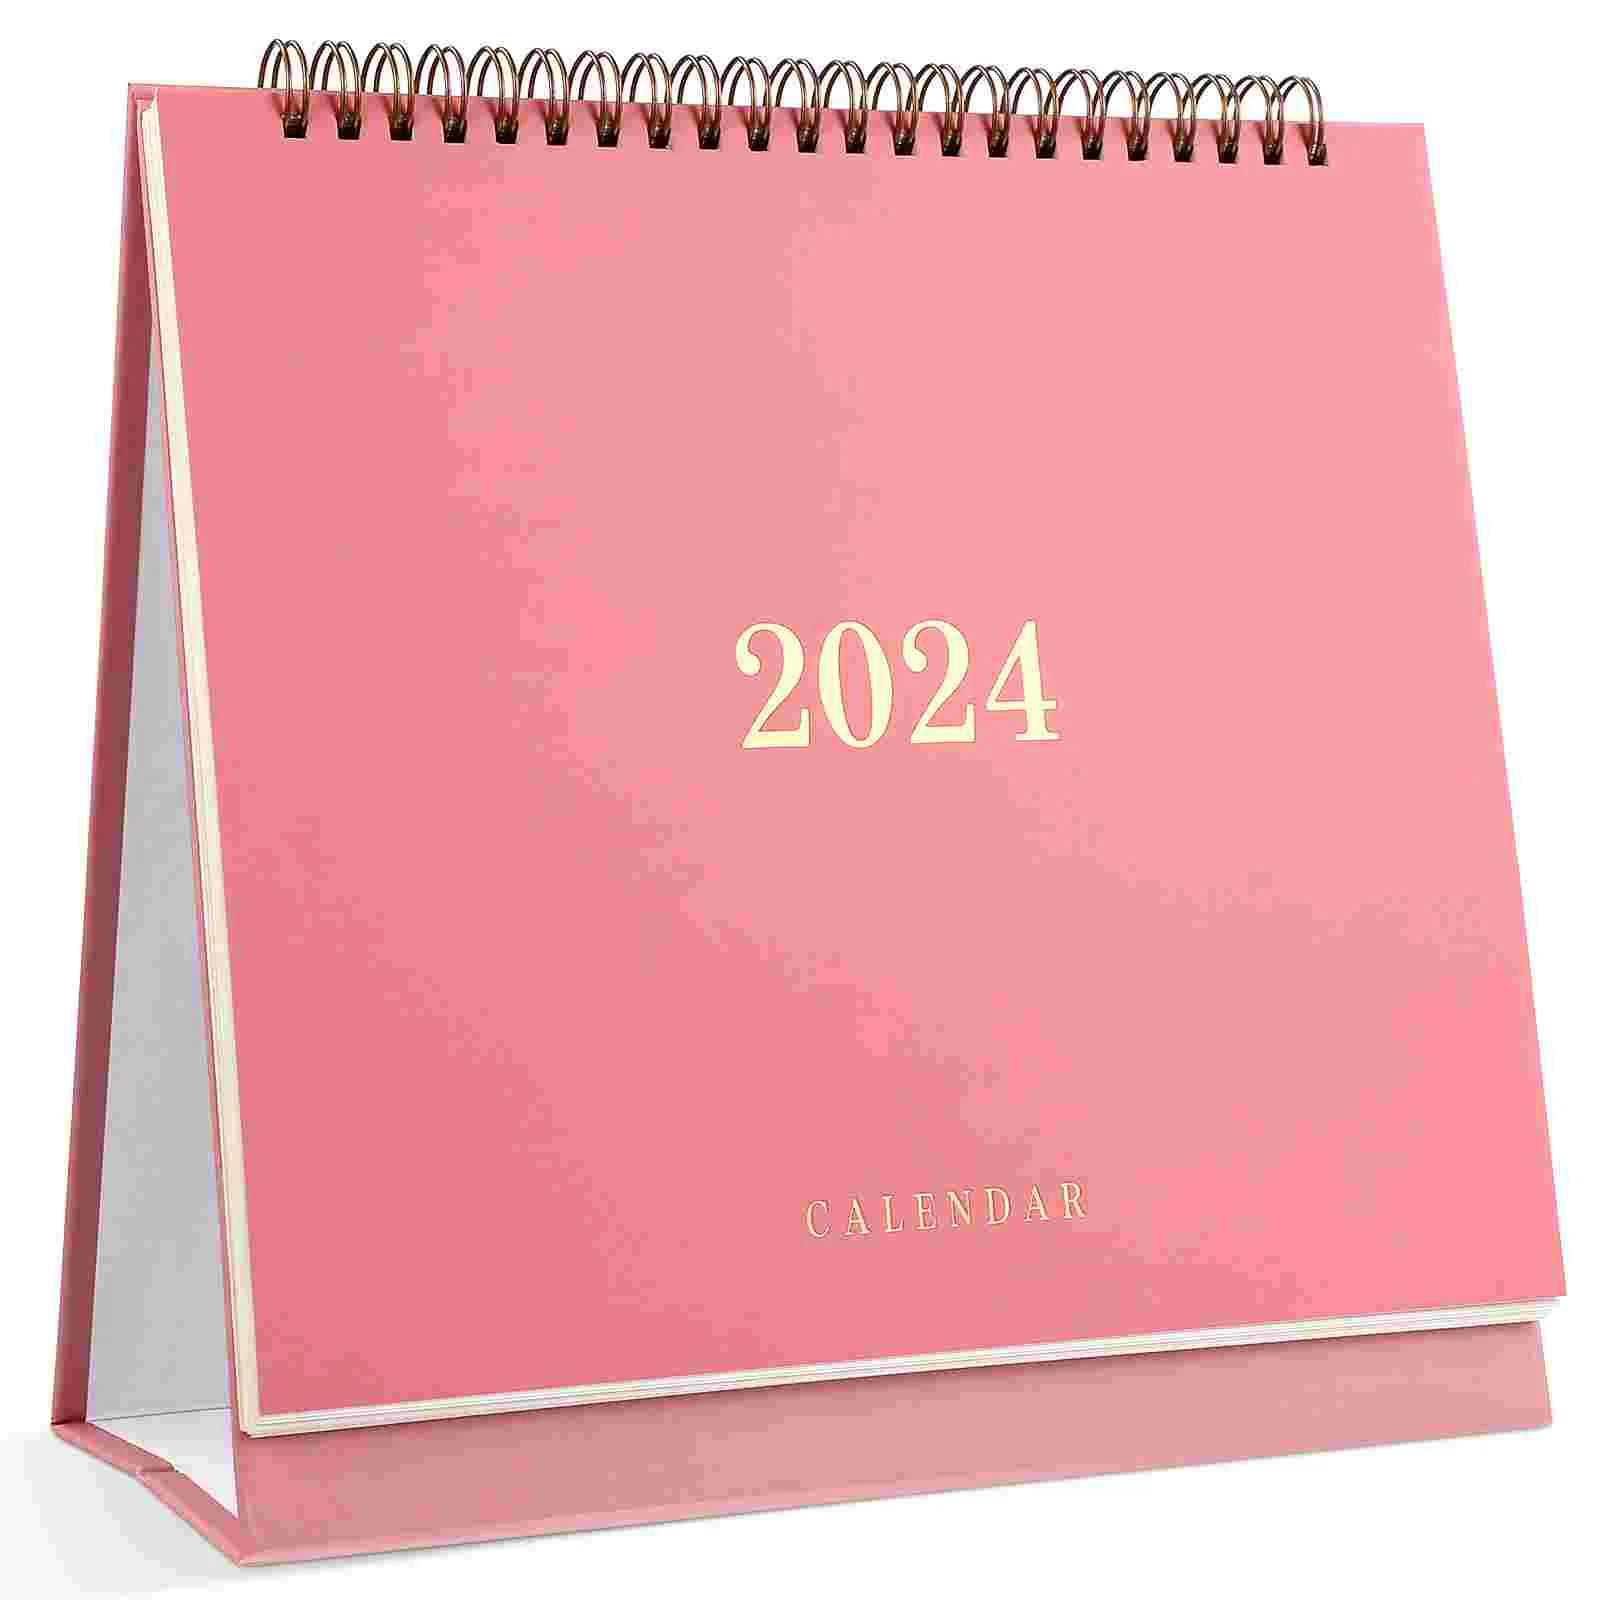 Календарь на 2024 год (розовый) Настольные Календари, Ежемесячный планировщик, настольный коврик, Офис по планированию бумаги